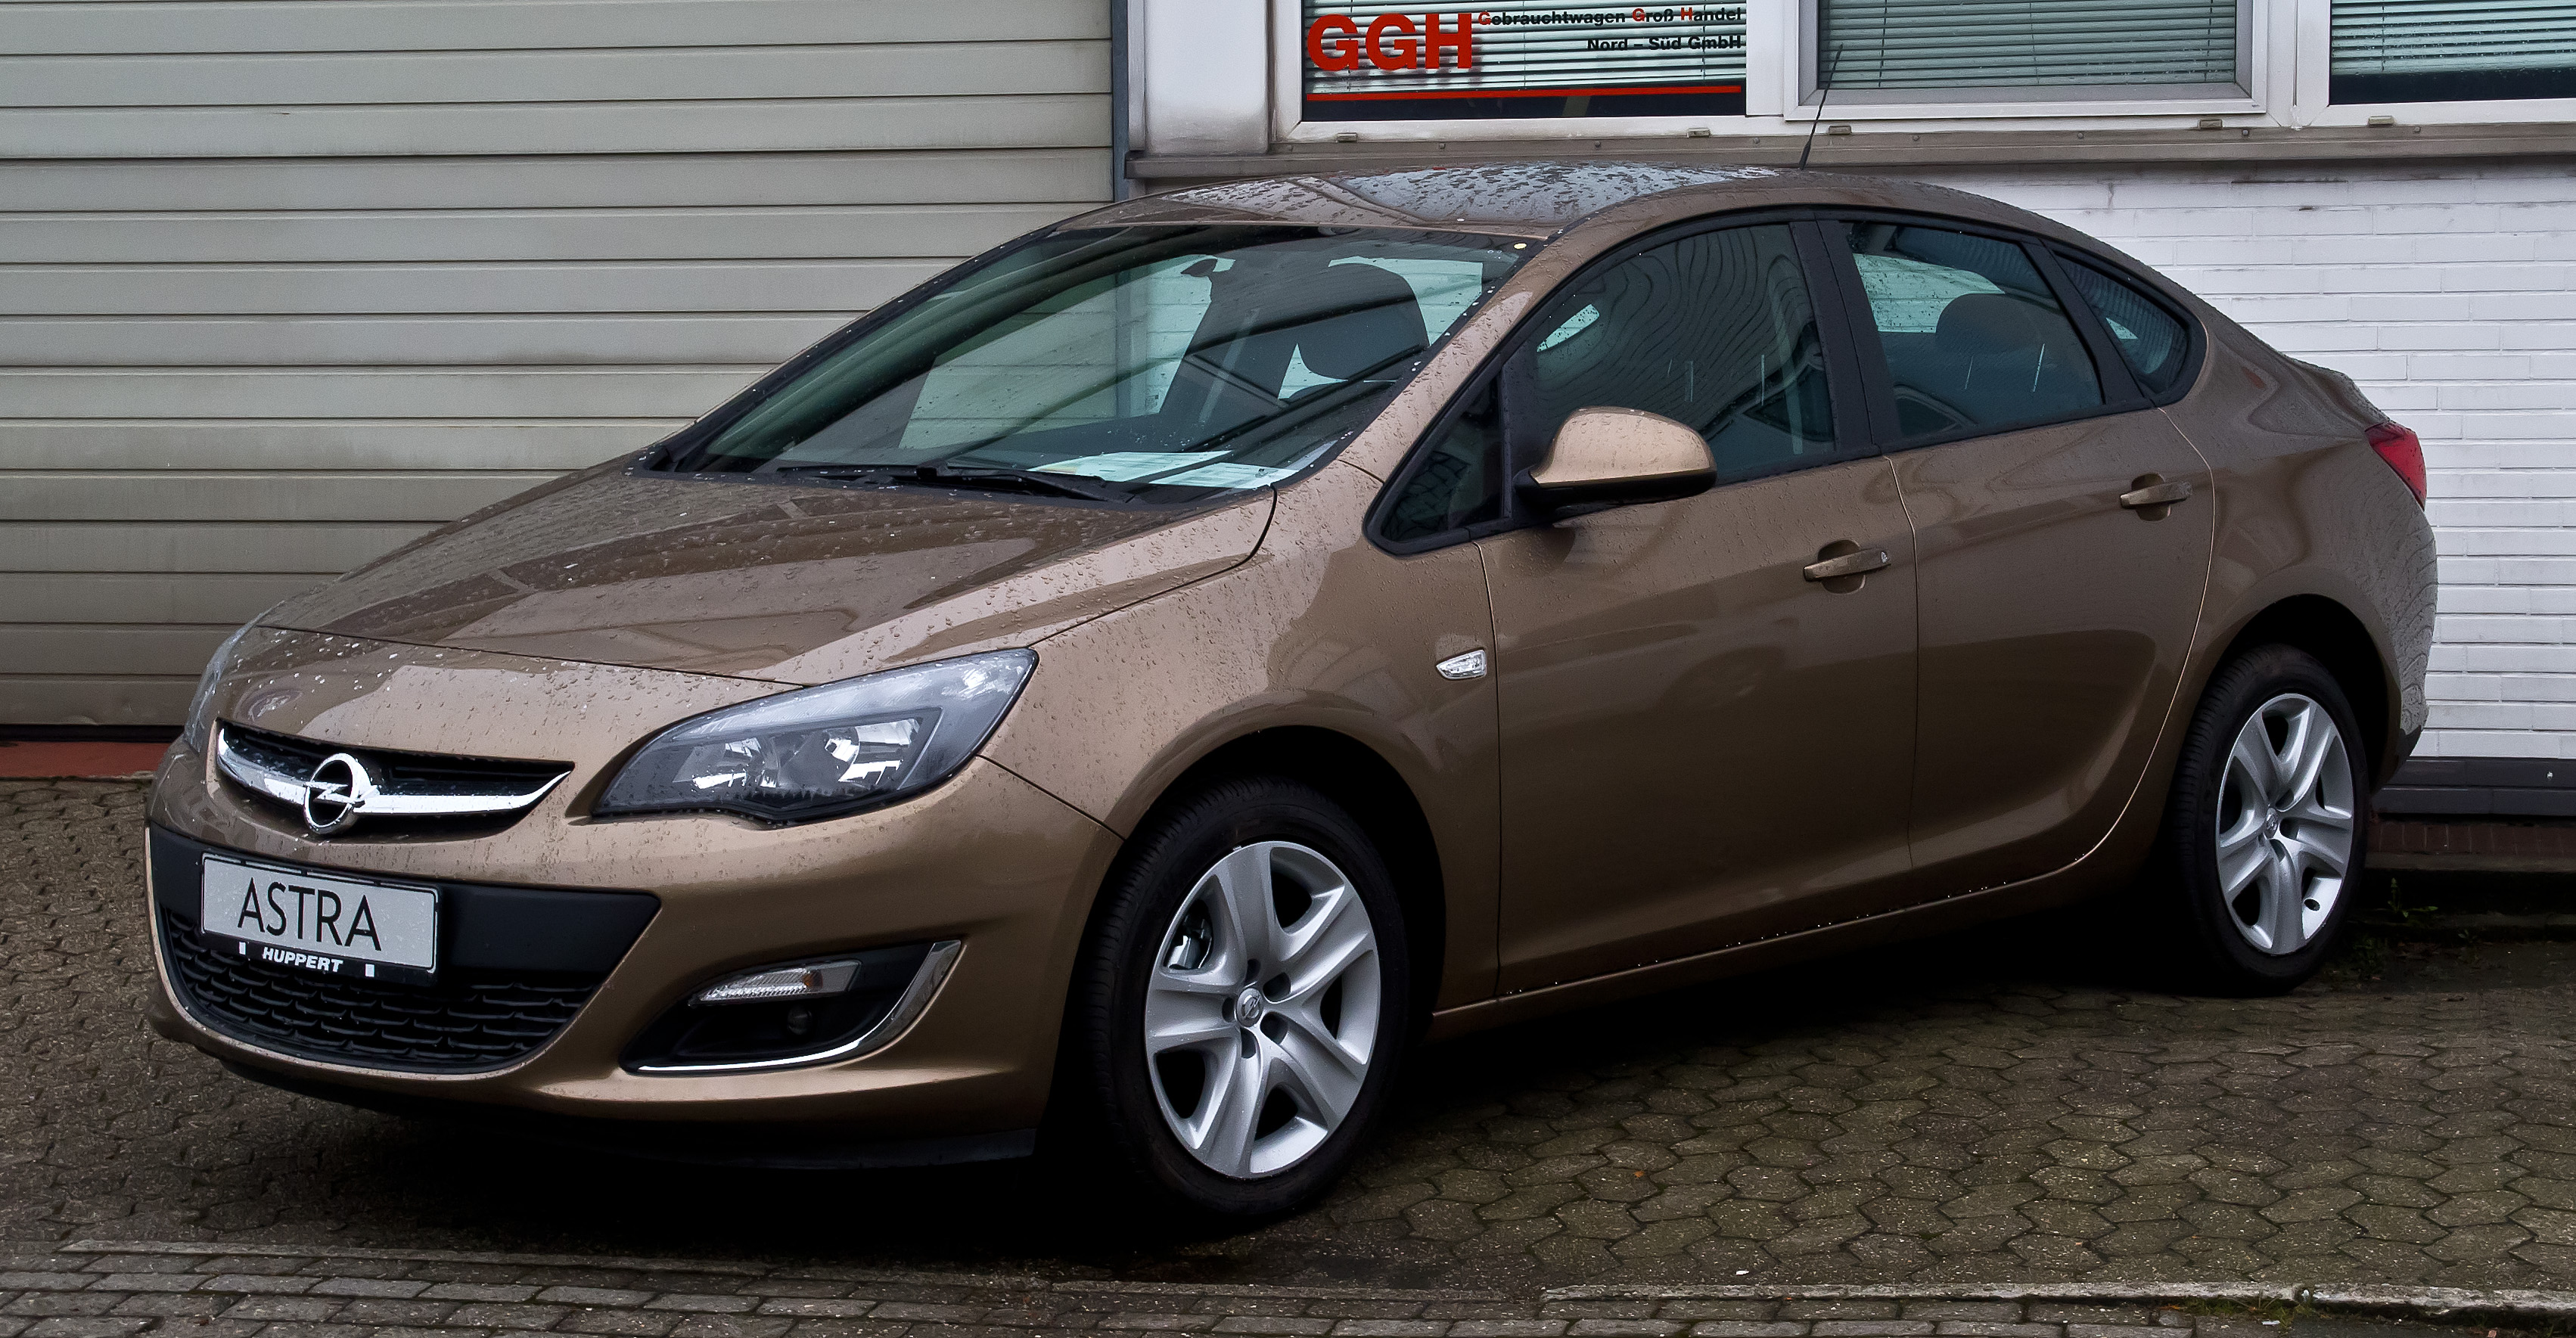 Внешний вид Opel Astra J